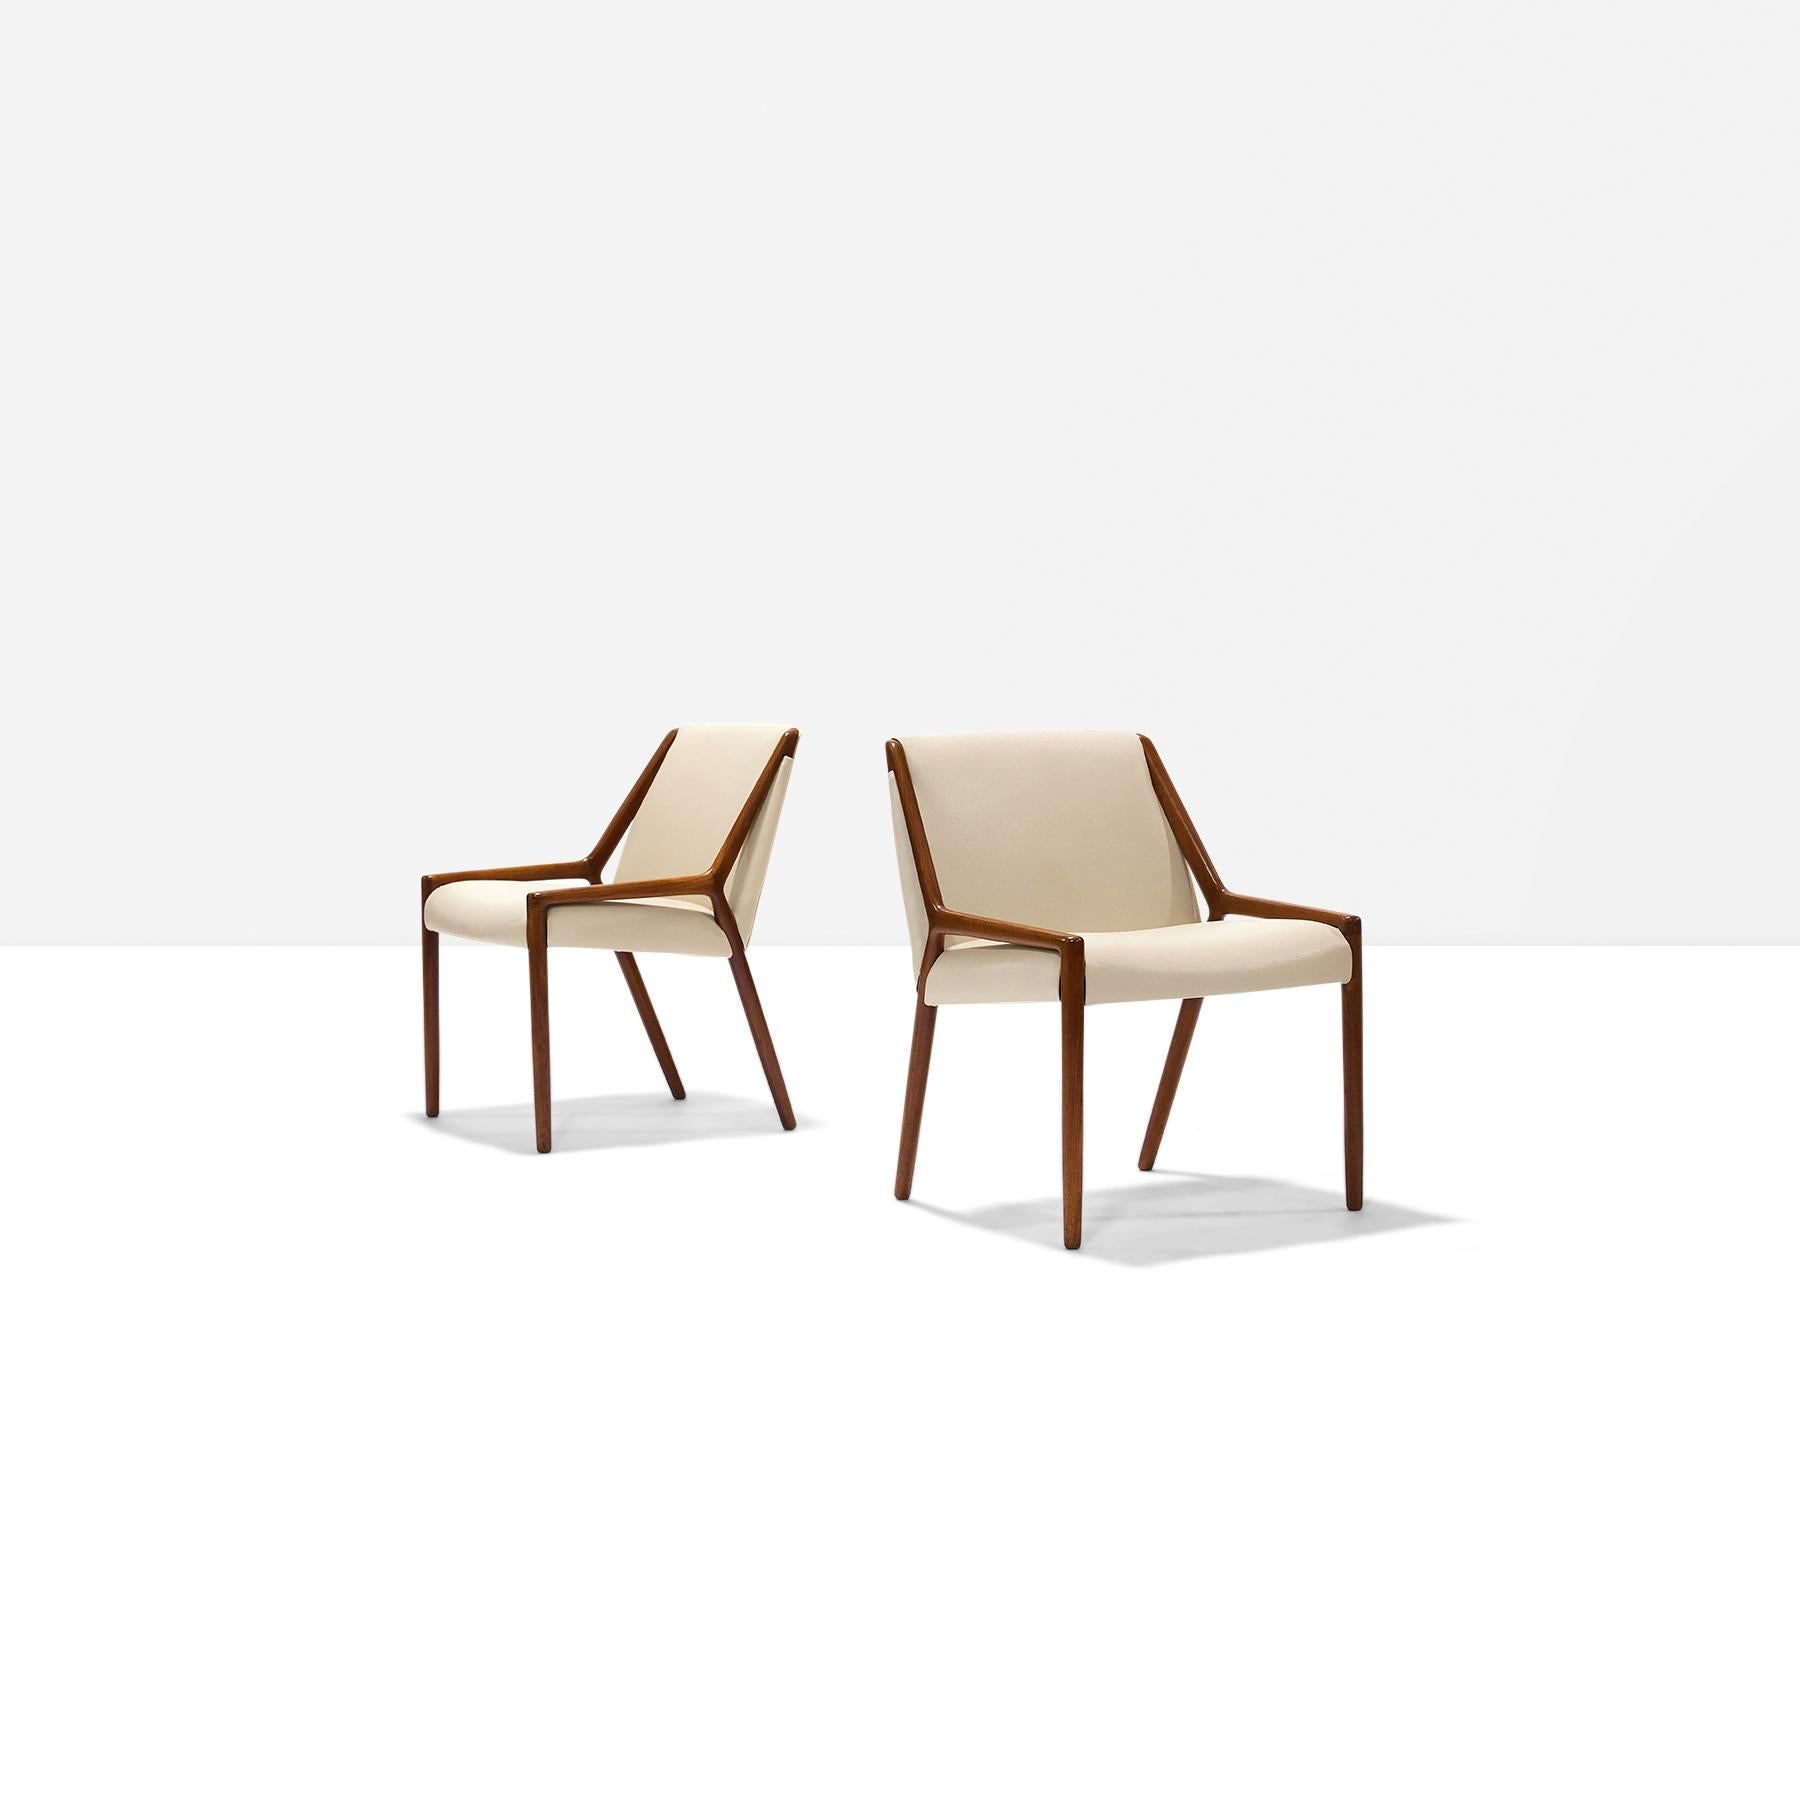 Ein Paar Beistellstühle aus Teakholz und Leder von Ejner Larsen und Aksel Bender Madsen für Willy Beck.
Ersetzte cremefarbenes Leder. Die Stühle werden als Set oder einzeln verkauft. In ausgezeichnetem Zustand.